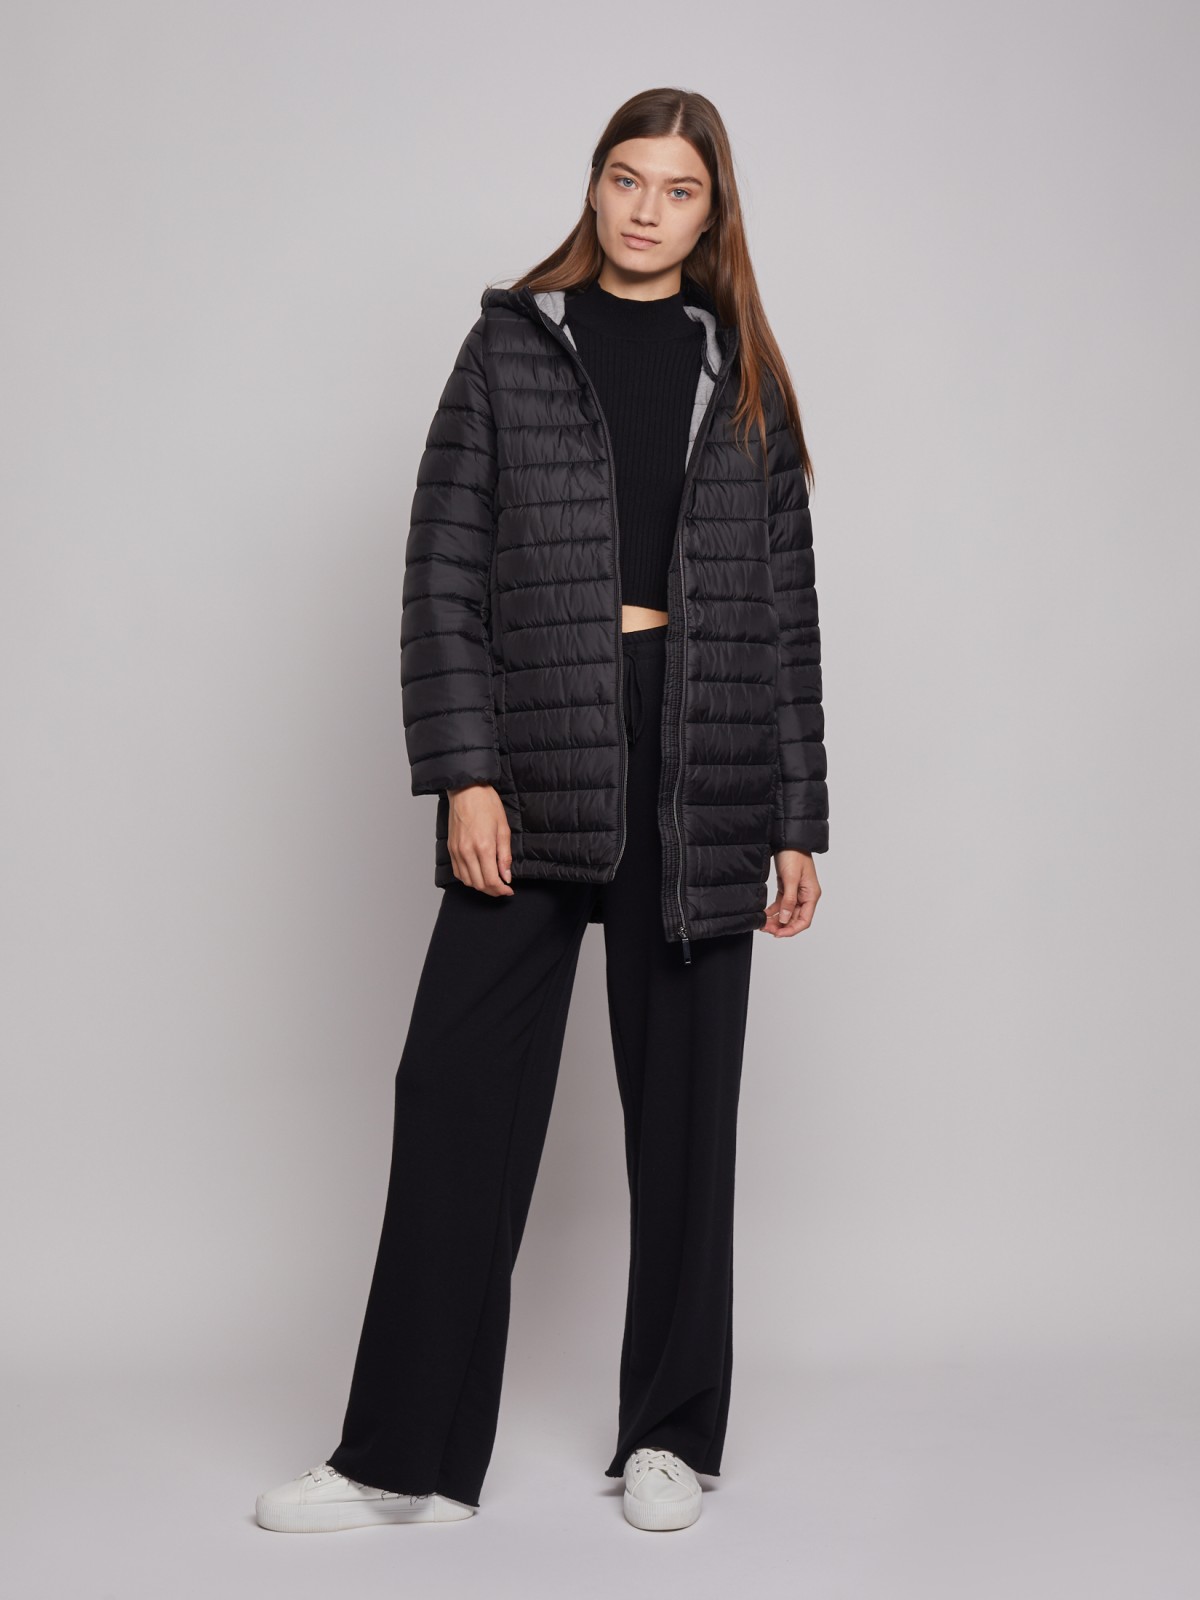 Утеплённое пальто с капюшоном zolla 022335212024, цвет черный, размер XS - фото 2